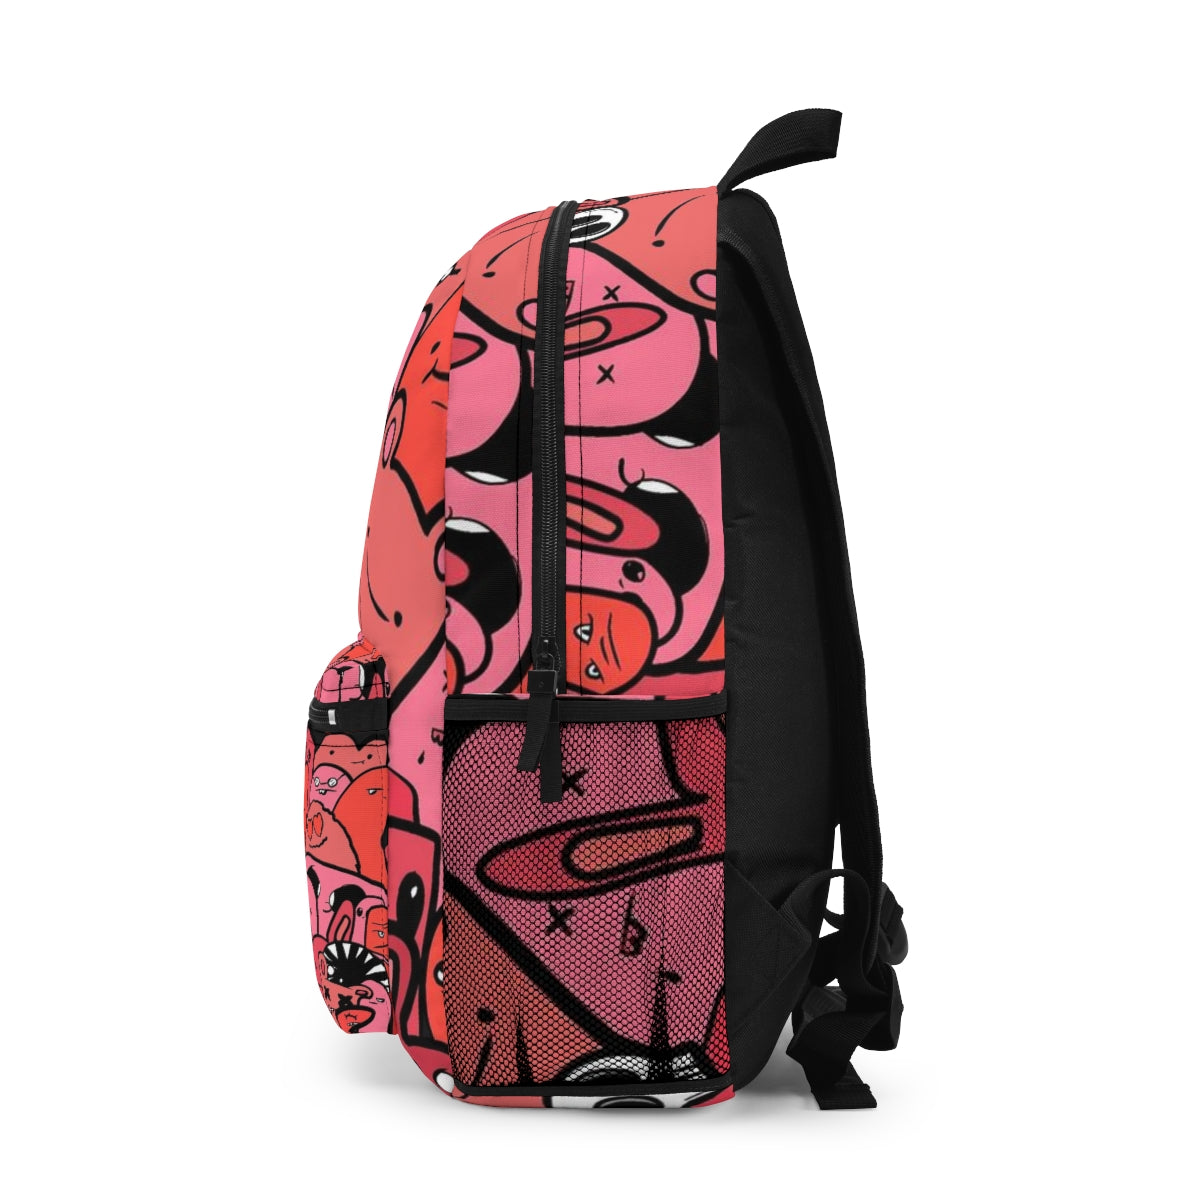 Doodle Backpack